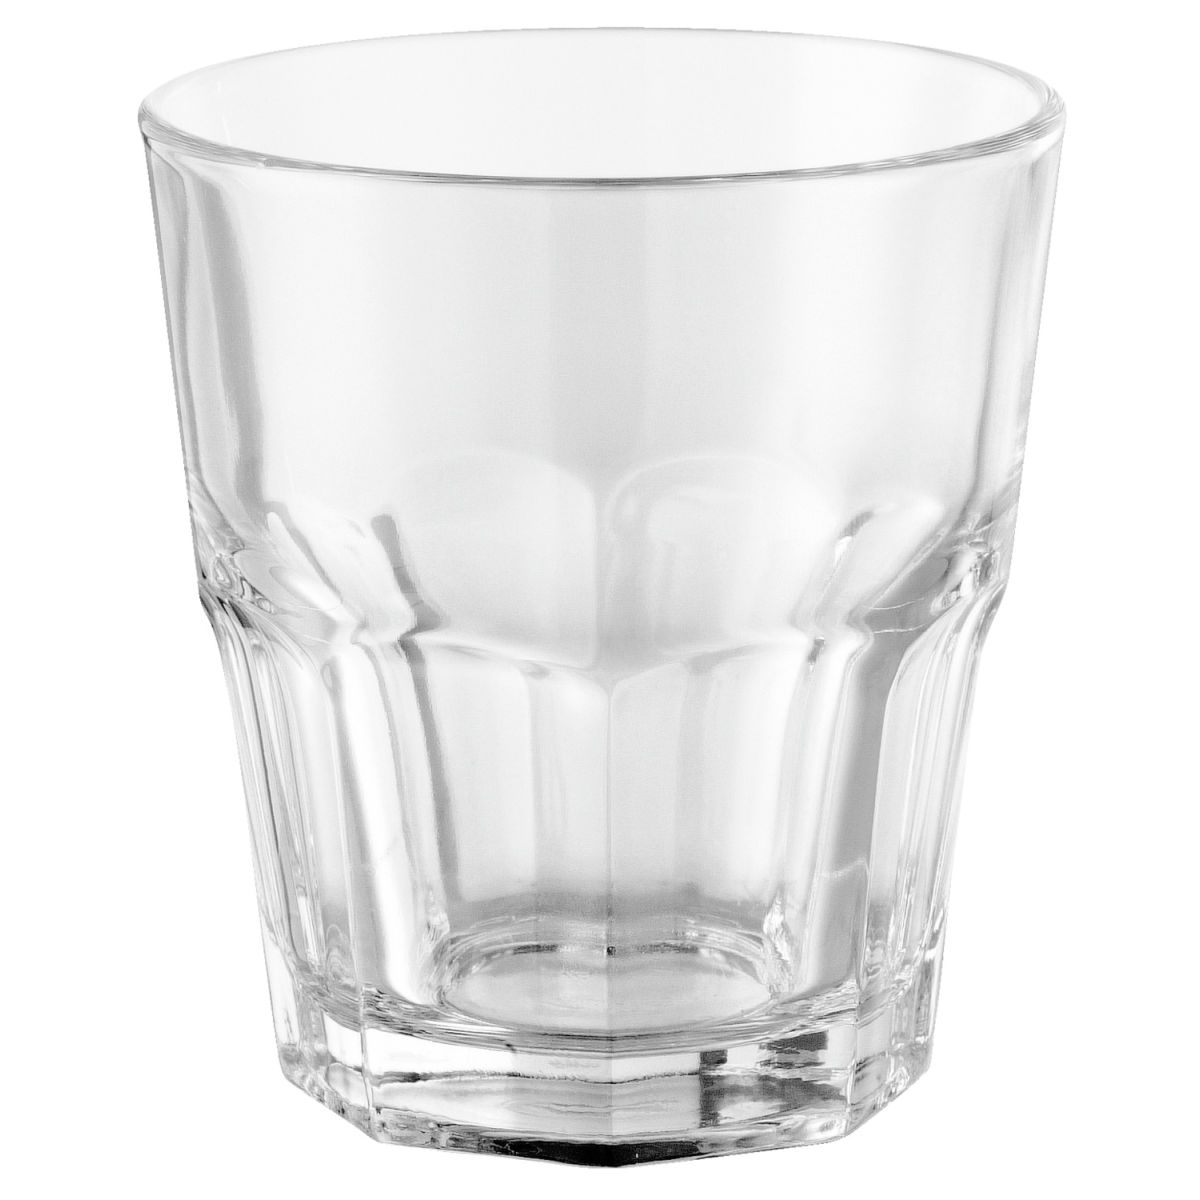 Pasabahçe Glas Casablanca stapelbaar; 250ml, 8.5x9 cm (ØxH); transparant; 6 stuk / verpakking